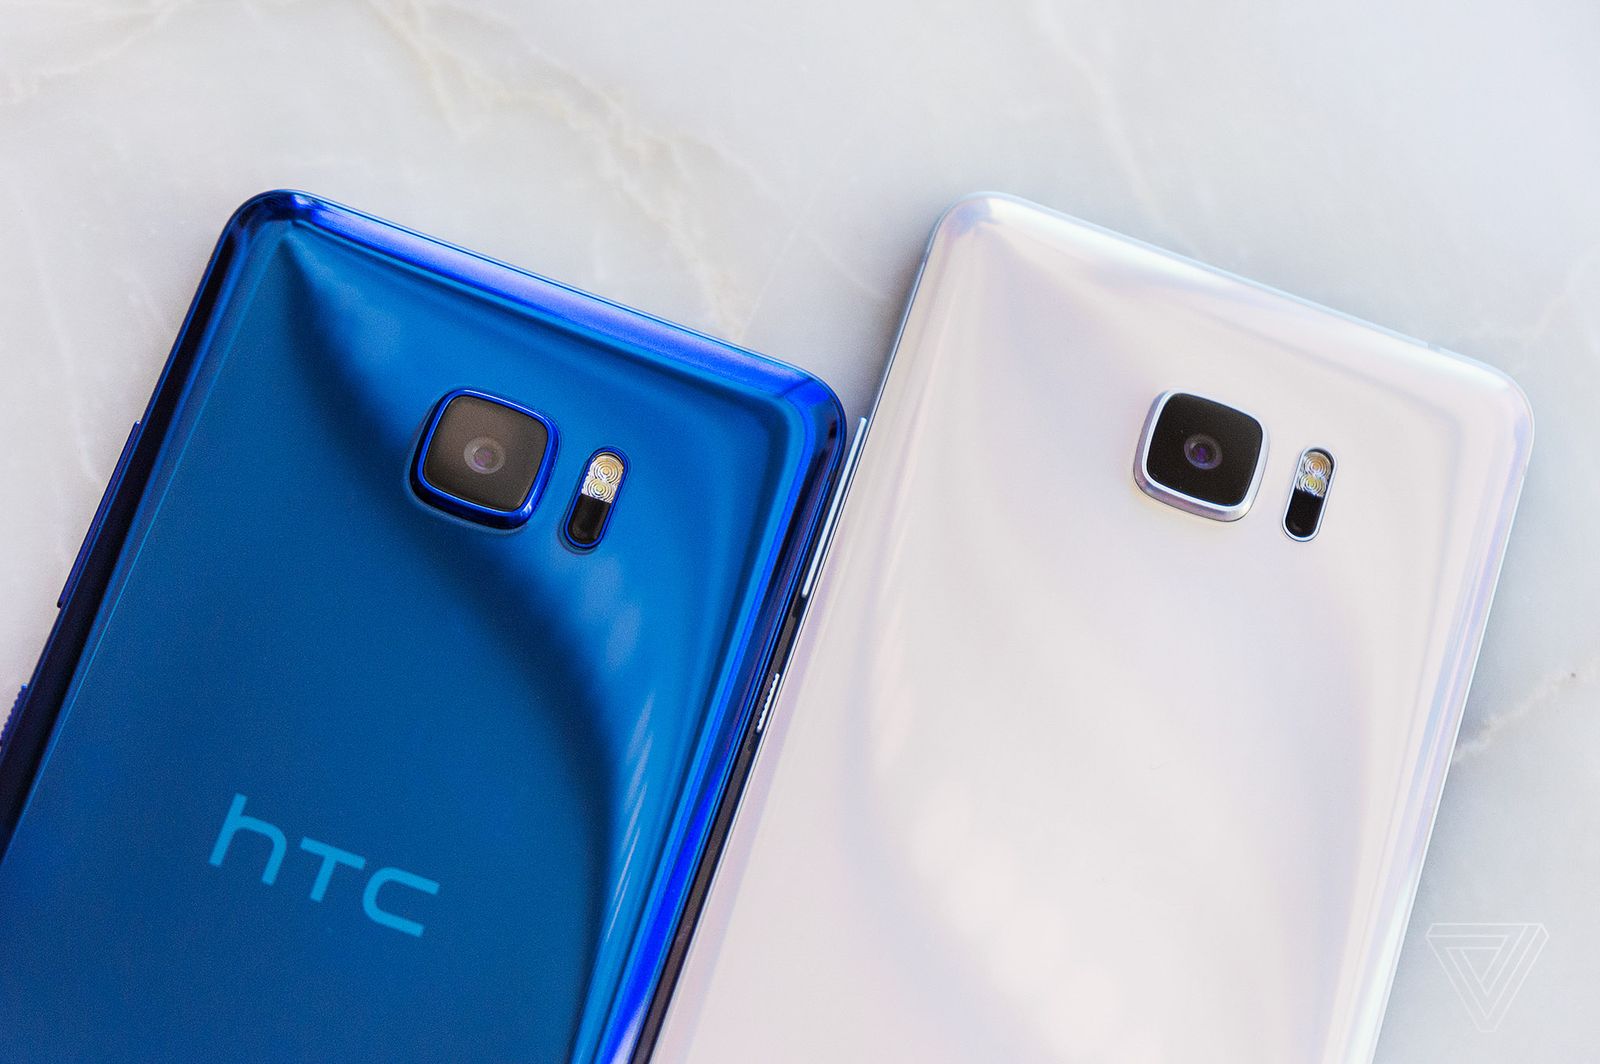 HTC U Ultra giá rẻ tái xuất thị trường Việt: 5.99 triệu đồng, chỉ có màu trắng